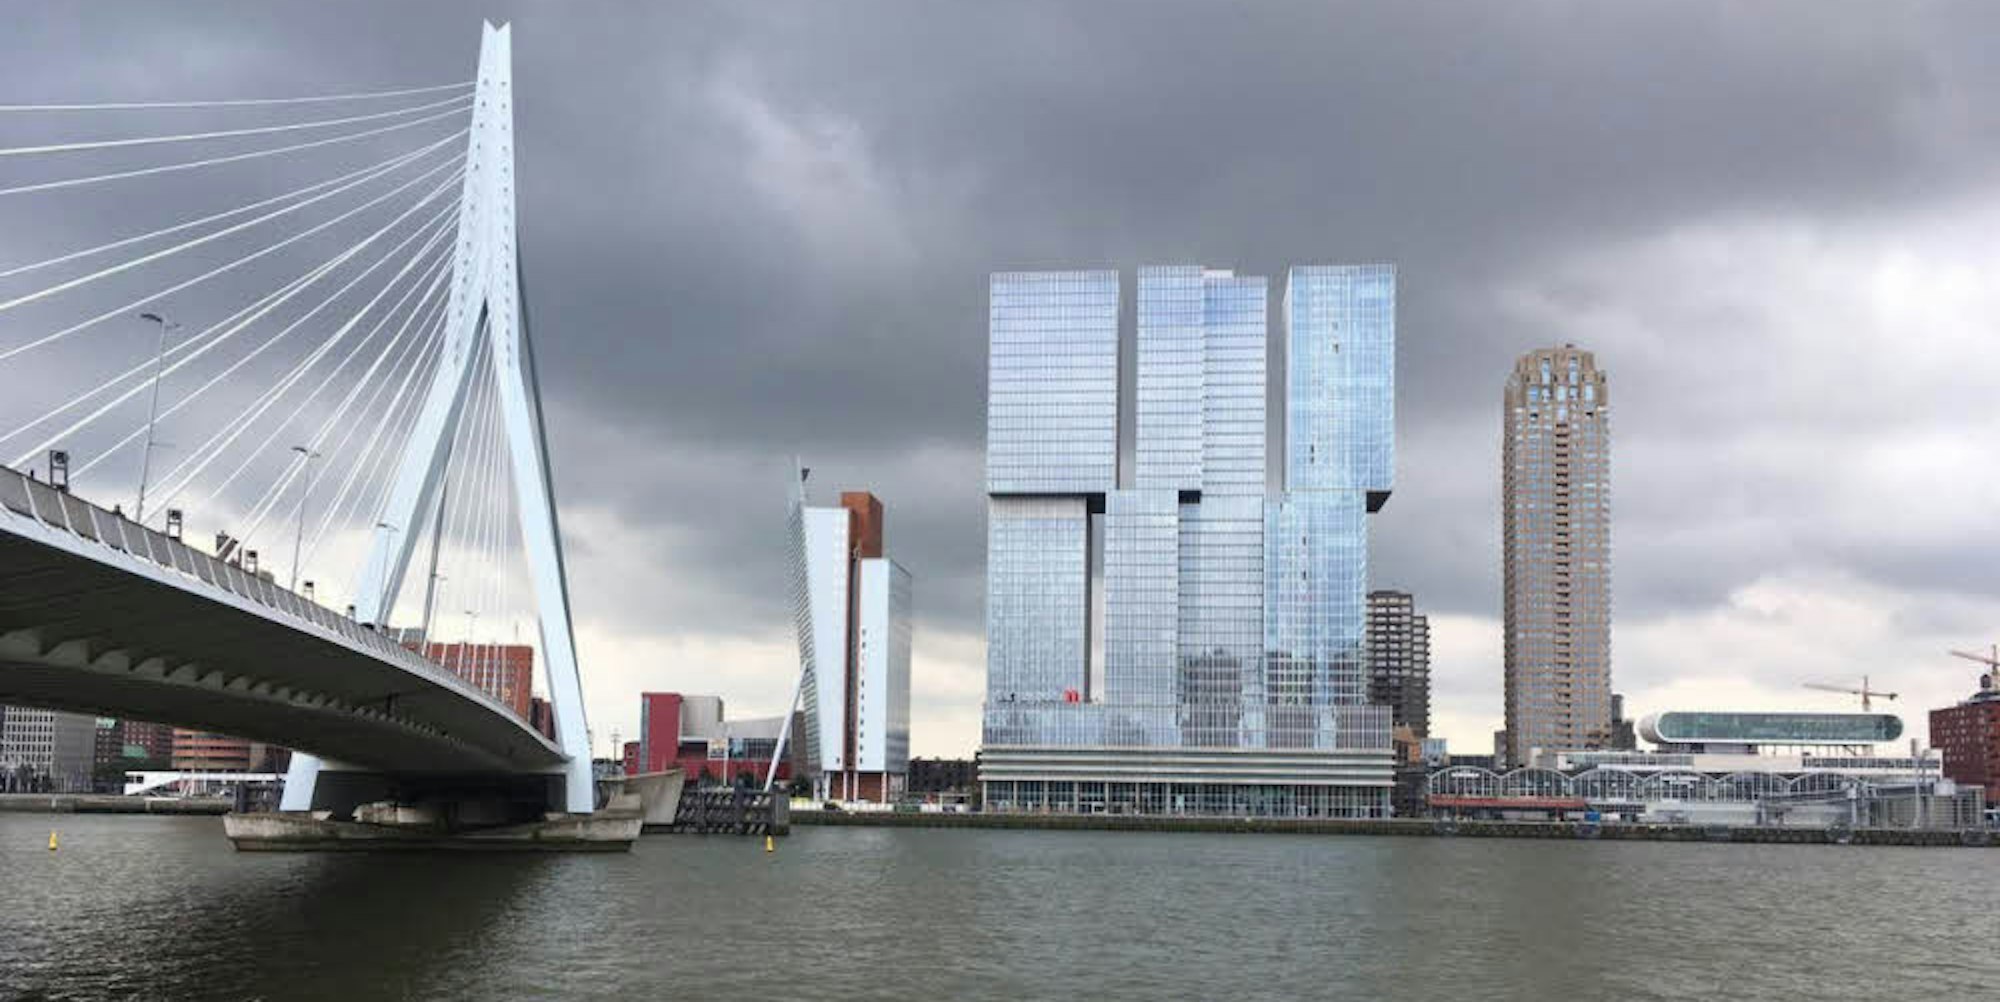 Der Hochhaus-Komplex De Rotterdam beherbergt ein Hotel, Büros und Wohnungen.